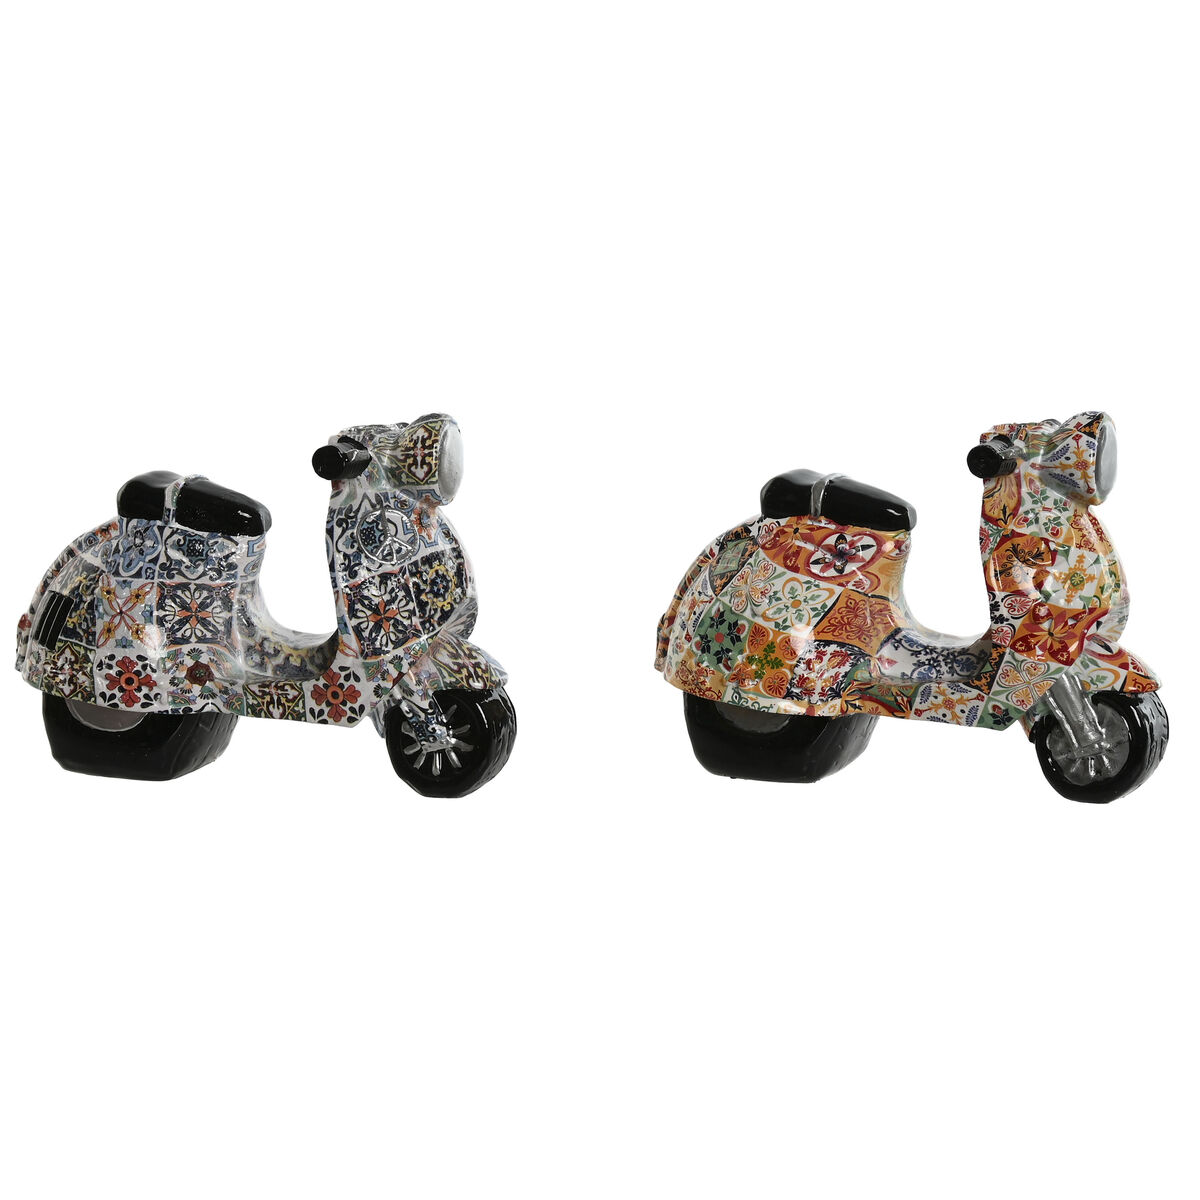 Figurine Décorative Home ESPRIT Multicouleur méditerranéen scooter 14 x 8 x 11 cm (2 Unités)